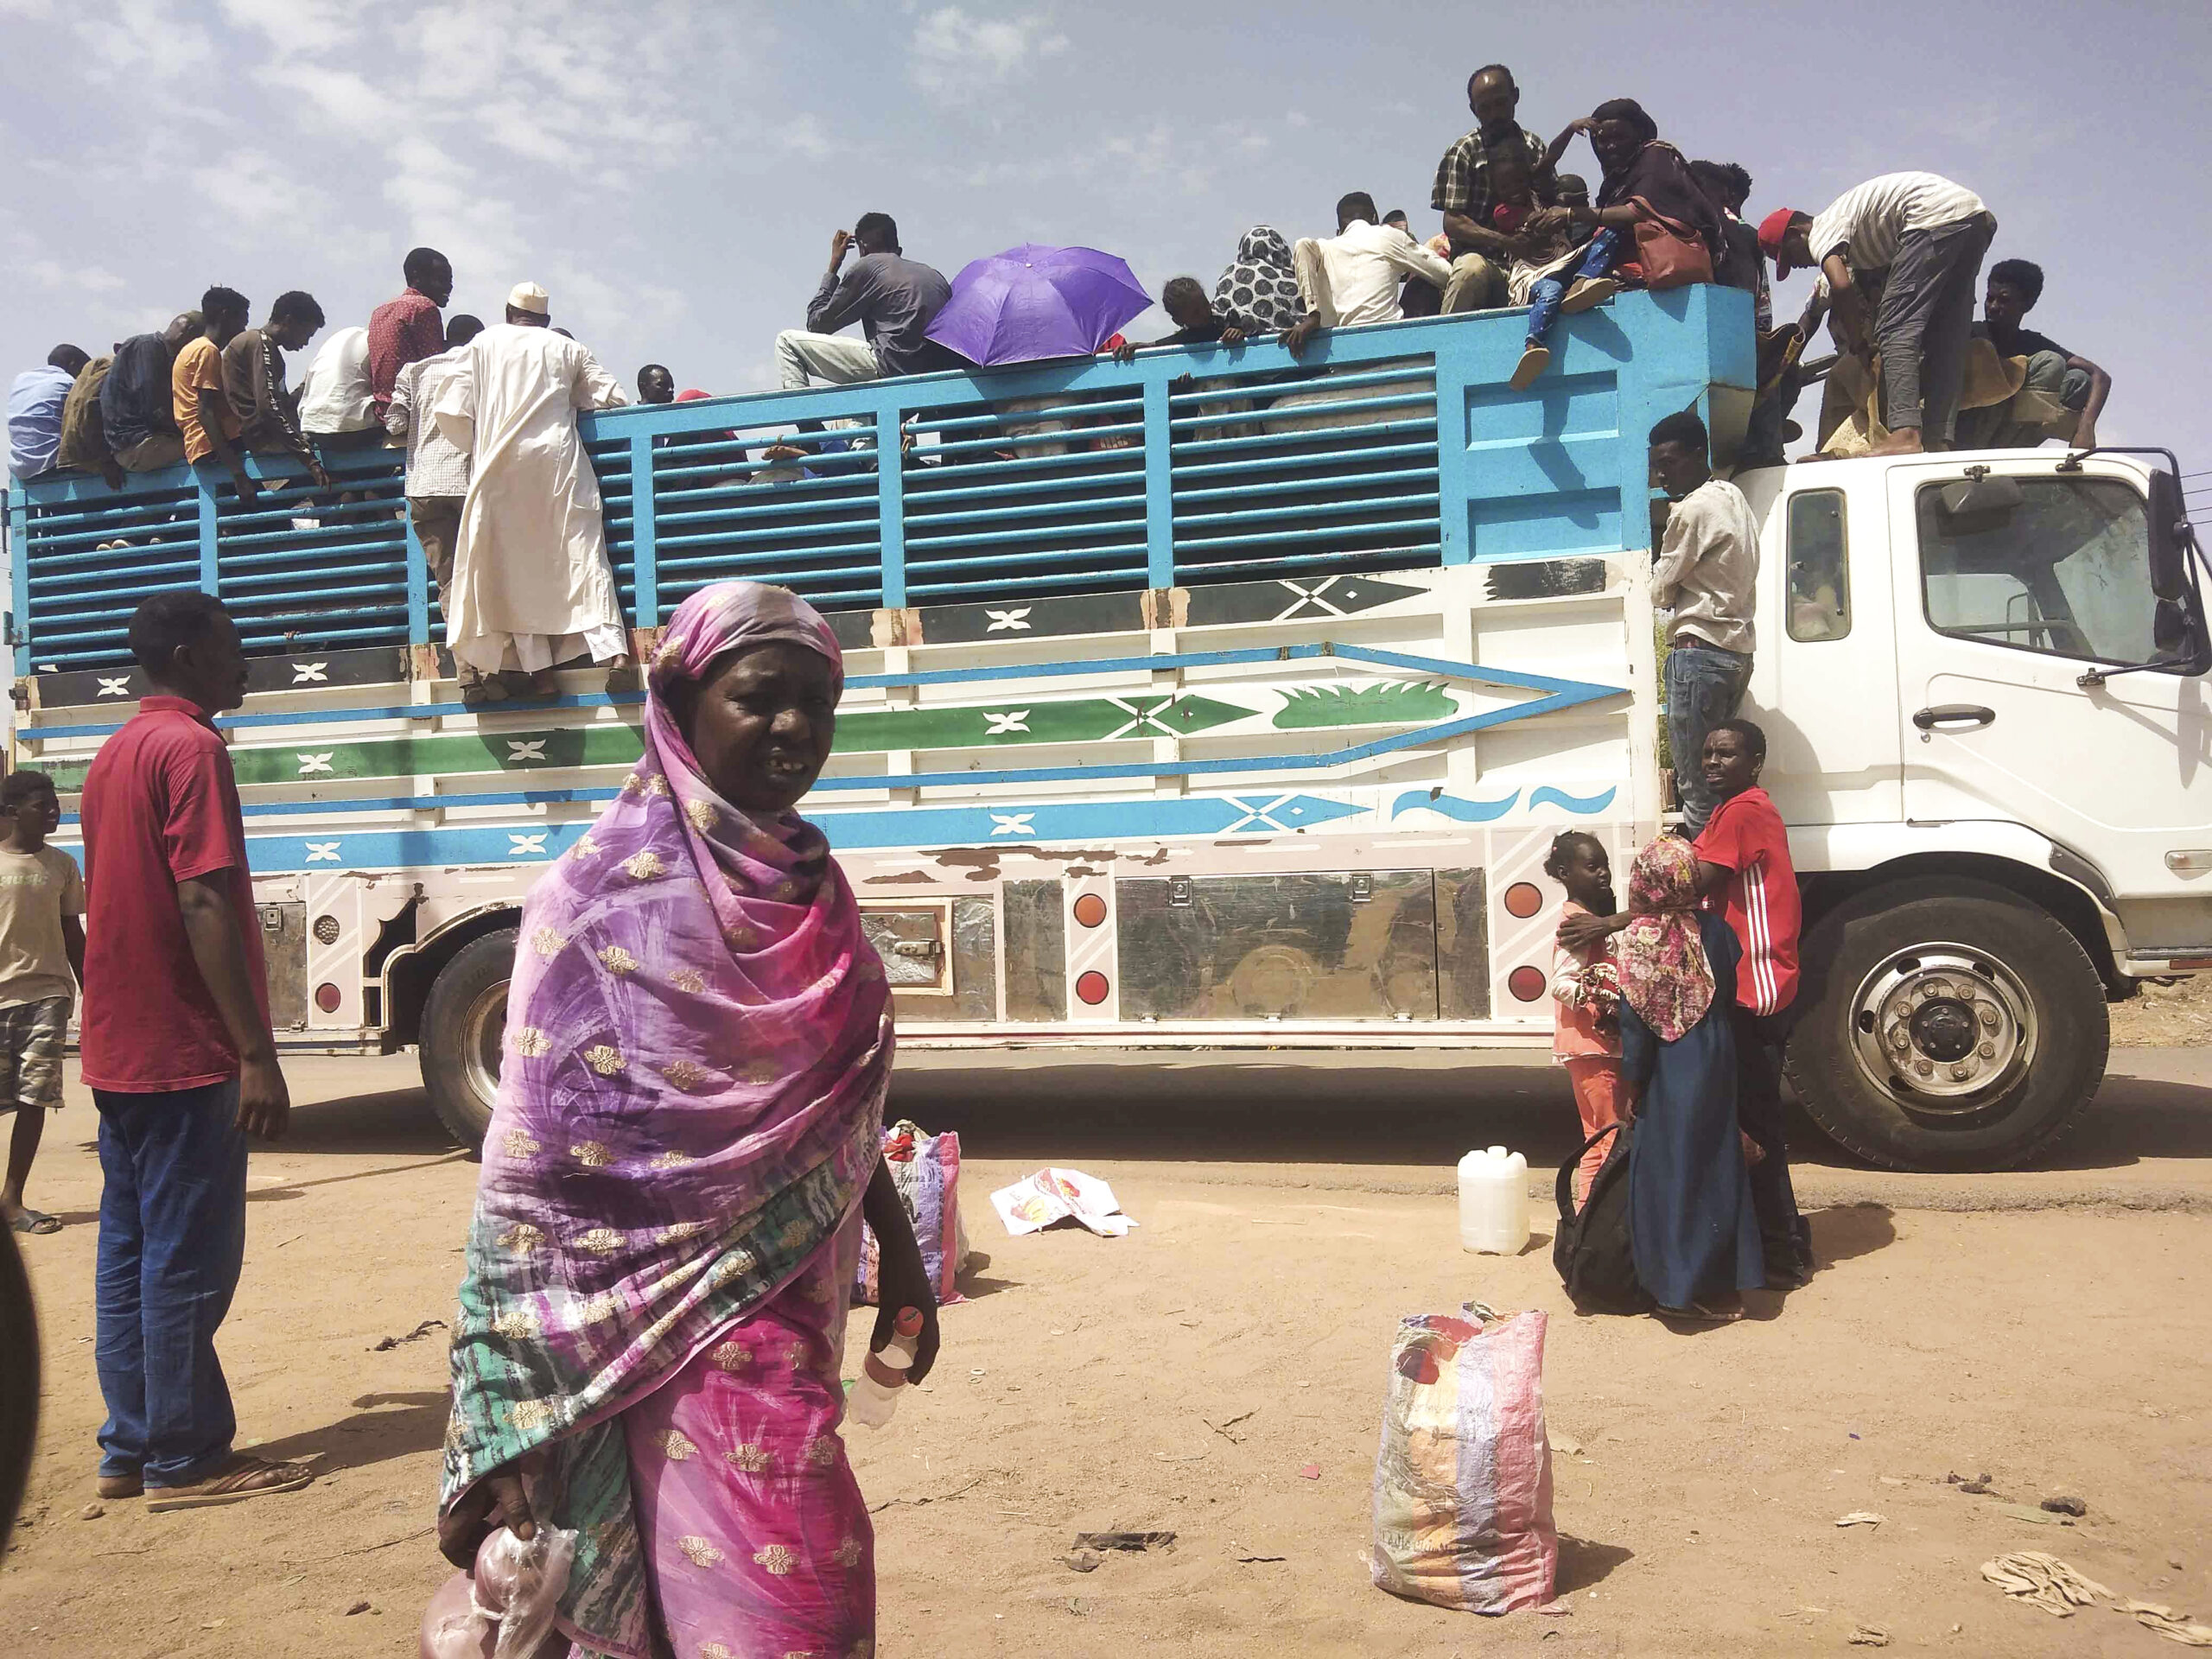 Menschen flüchten wegen des Machtkampfs im Sudan